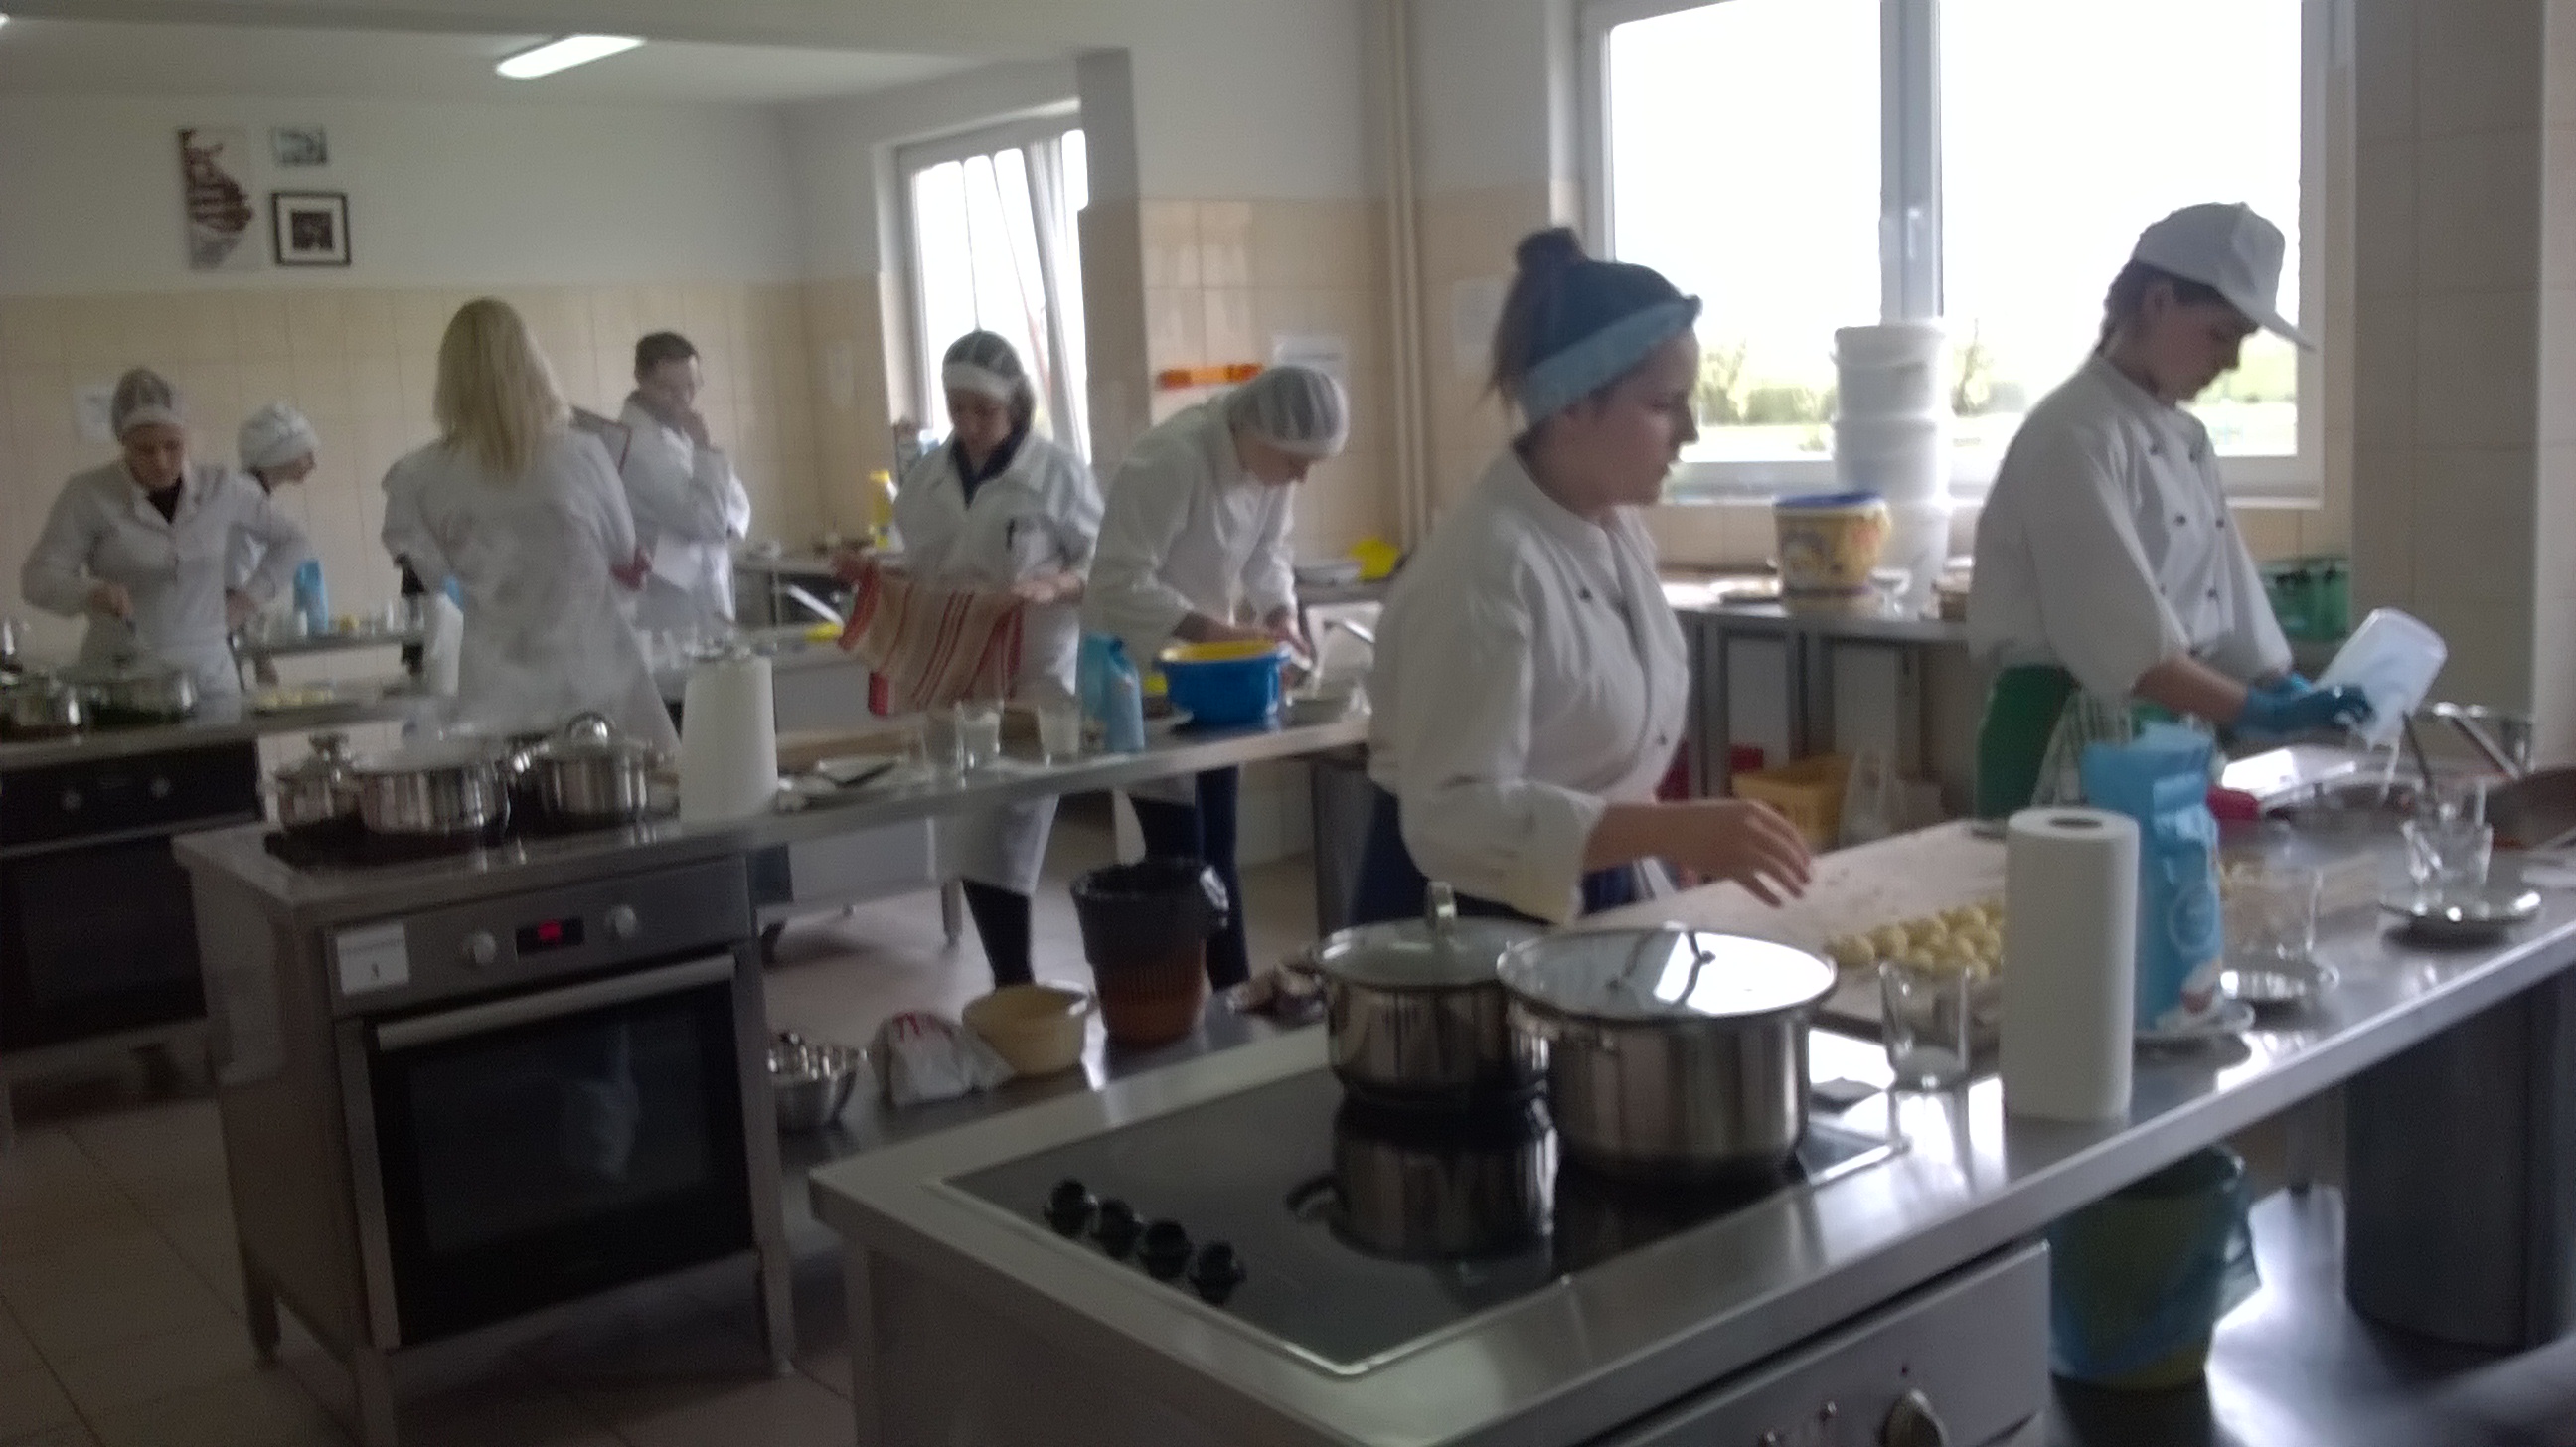 Uczestniczy Olimpiady podczas wykonywania zadania praktycznego  (wykonanie klusek śląskich) w bloku „Gastronomia”.